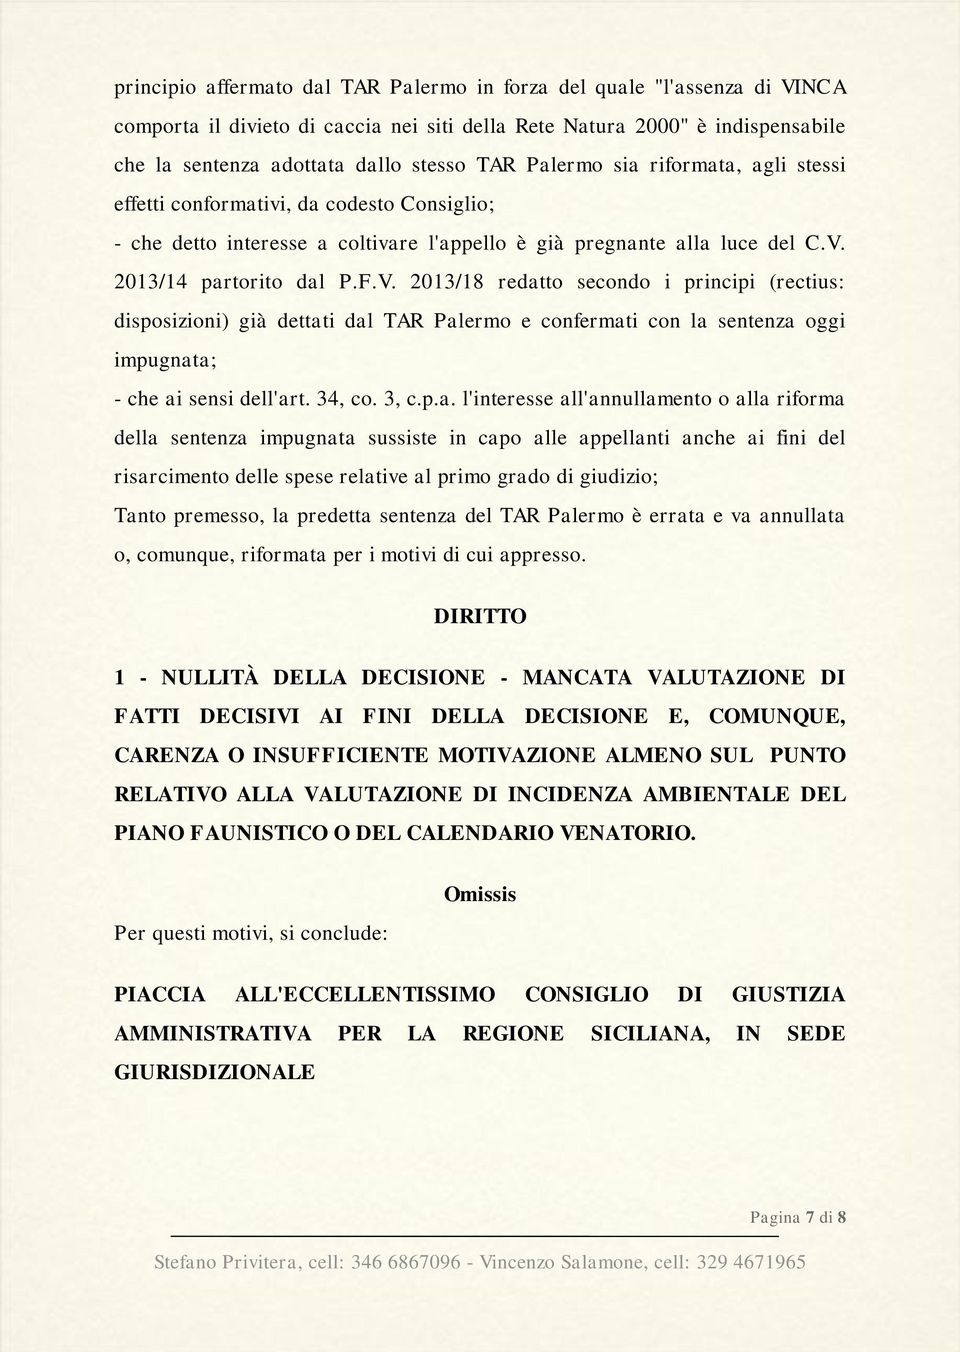 2013/14 partorito dal P.F.V. 2013/18 redatto secondo i principi (rectius: disposizioni) già dettati dal TAR Palermo e confermati con la sentenza oggi impugnata; - che ai sensi dell'art. 34, co. 3, c.